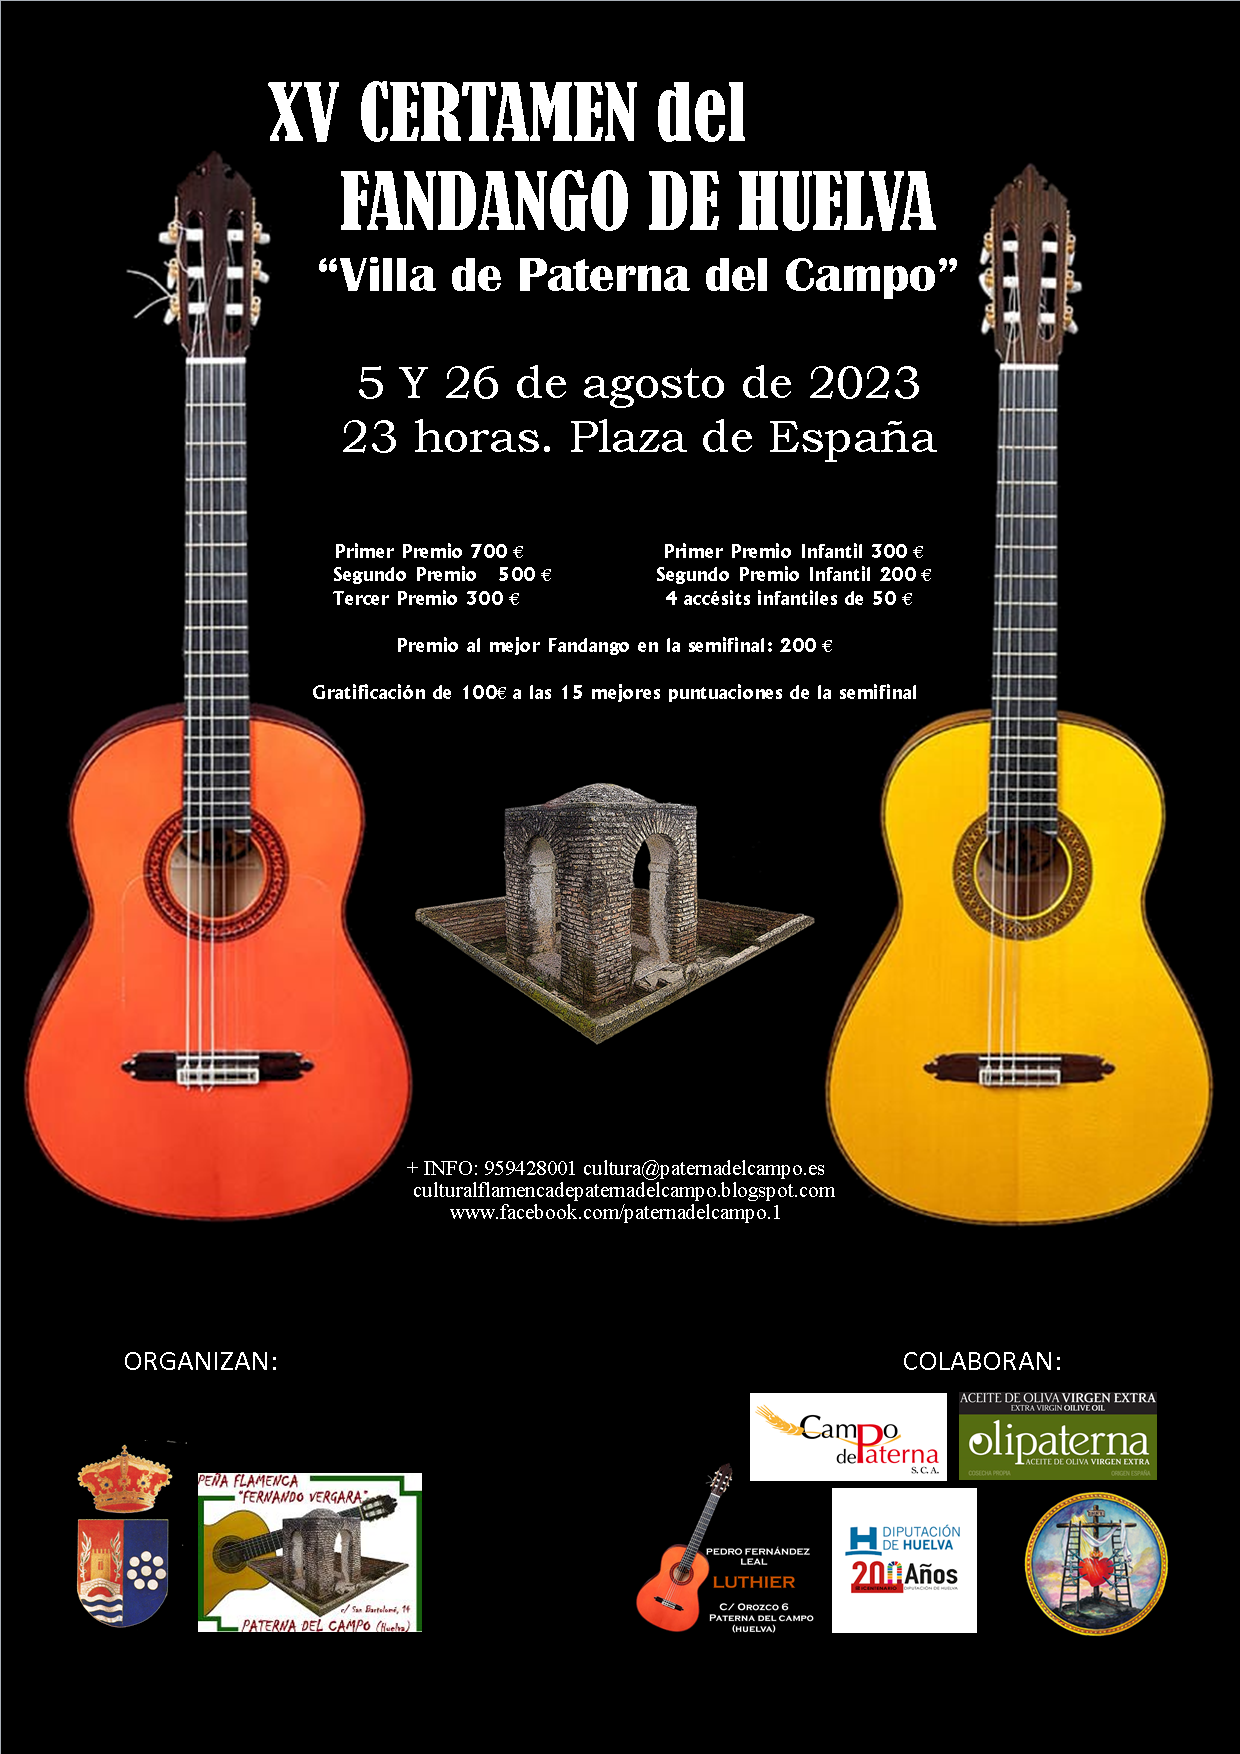 Paterna del Campo acoge la XV edición del Certamen del Fandango de Huelva